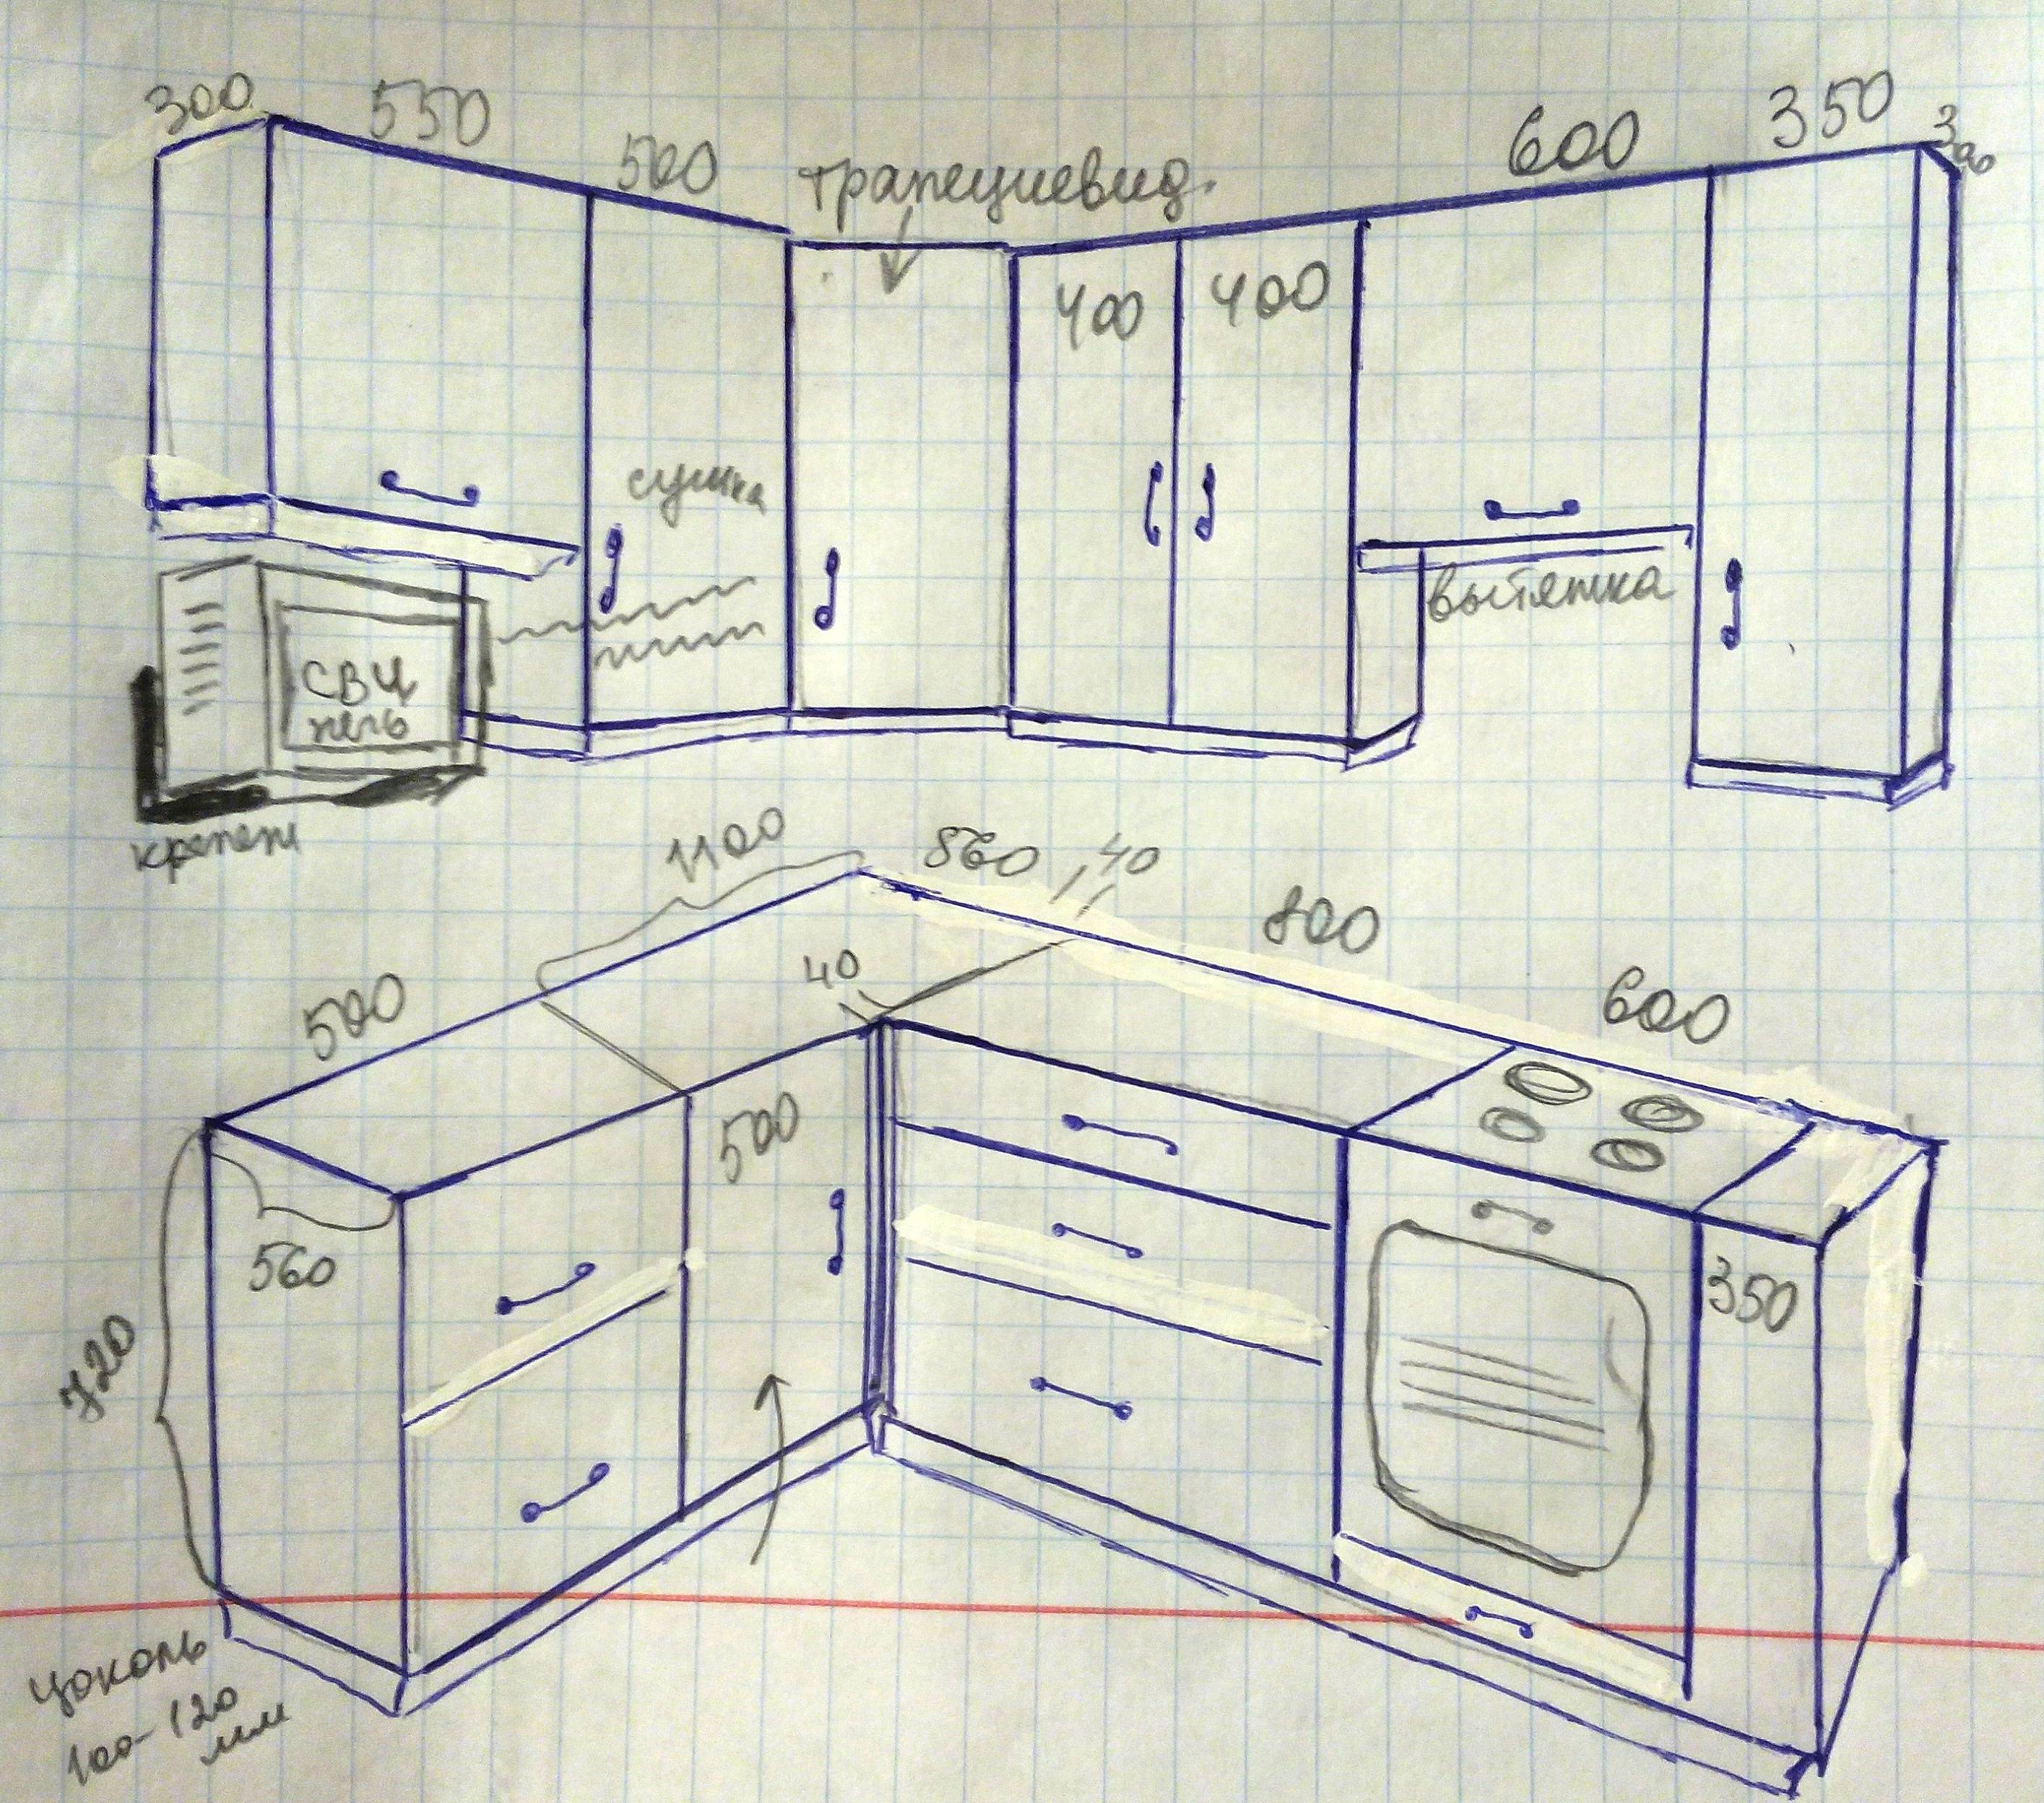 Кухня своими руками: пошаговая инструкция по изготовлению мебели, чертежи кухонного гарнитура